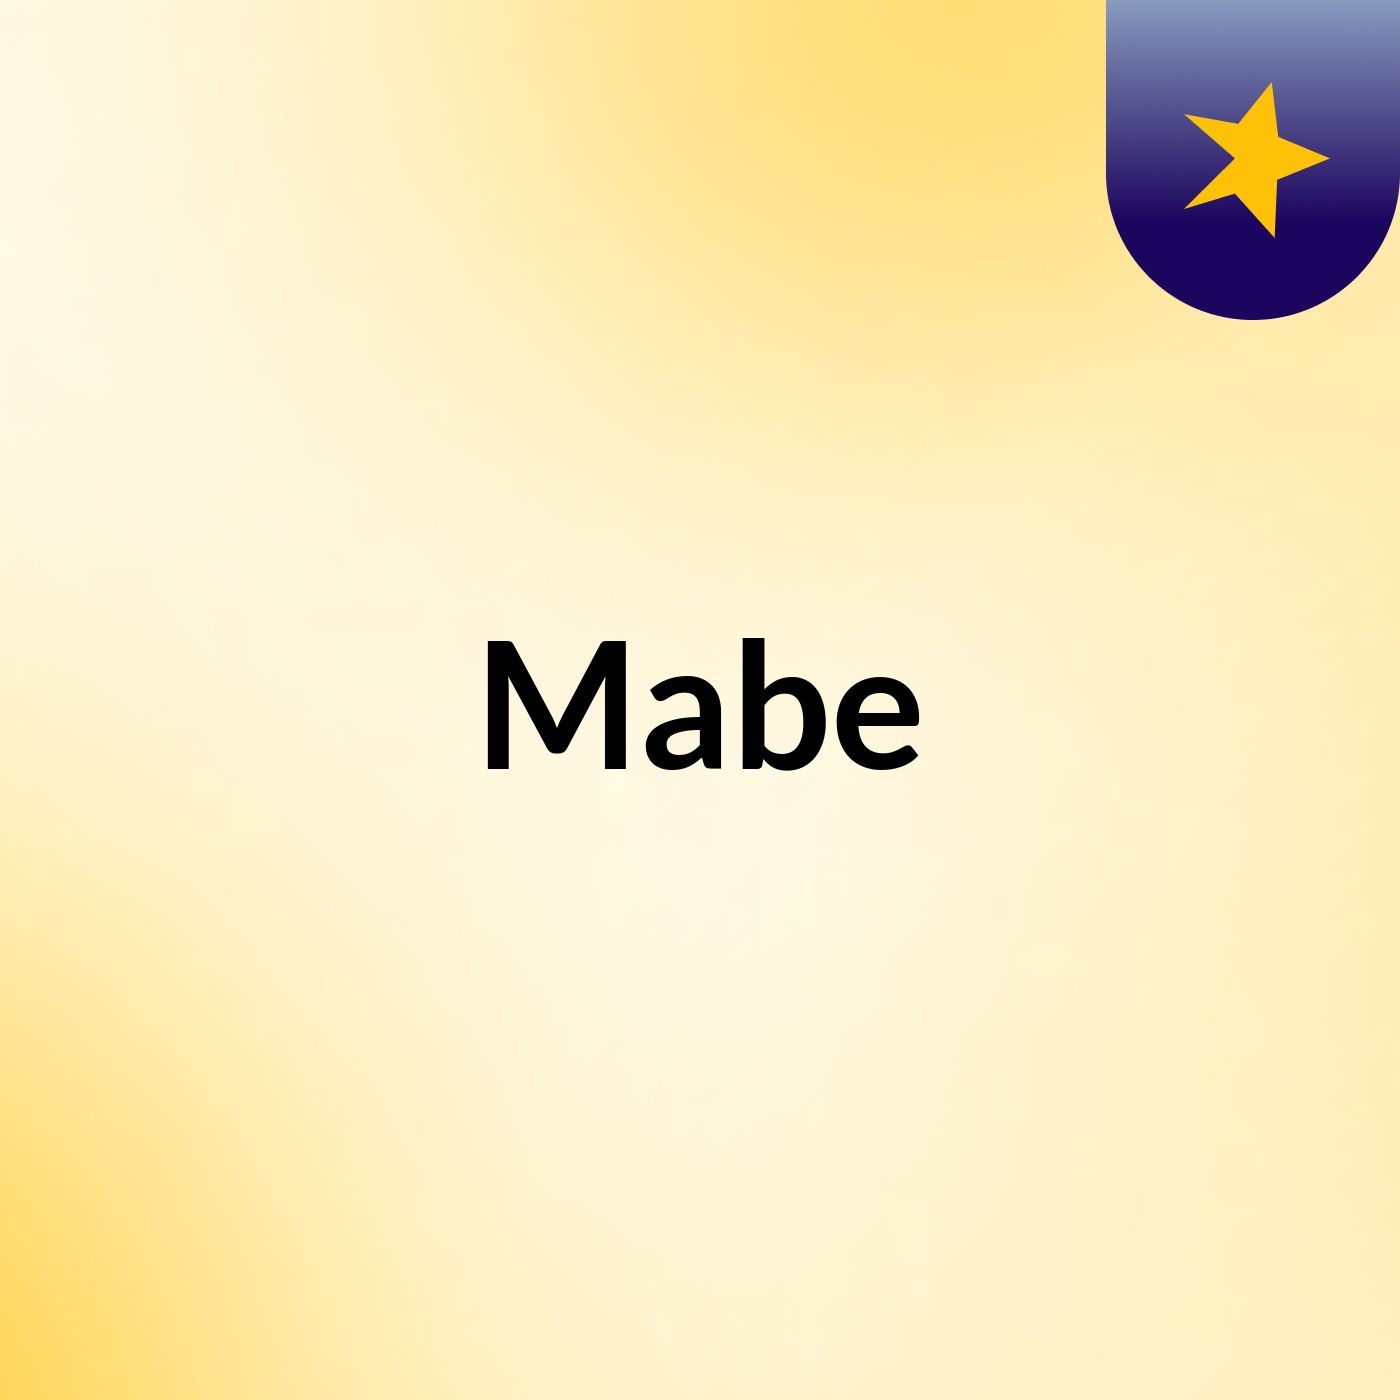 Mabe